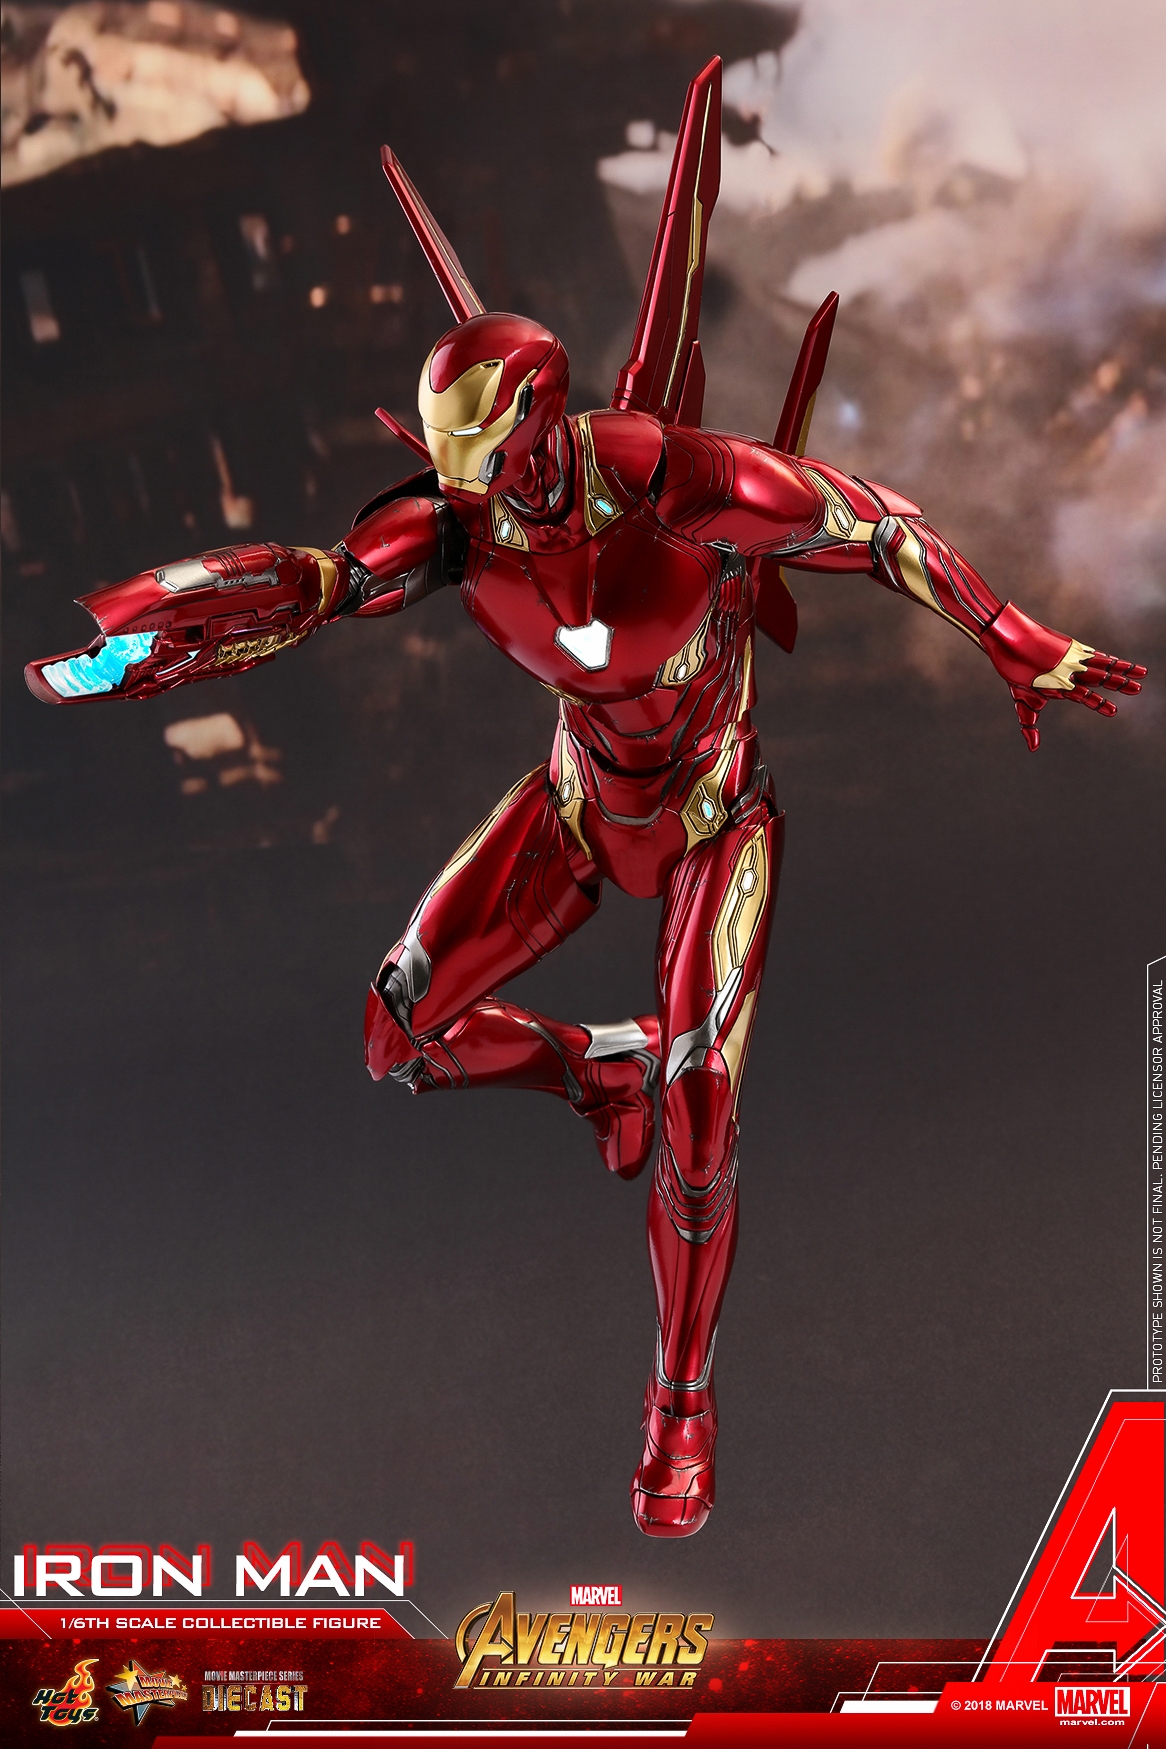 Hot-Toys-MMS473D23-Avengers-Infinity-War-Iron-Man-Collectible-Figure-002.jpg